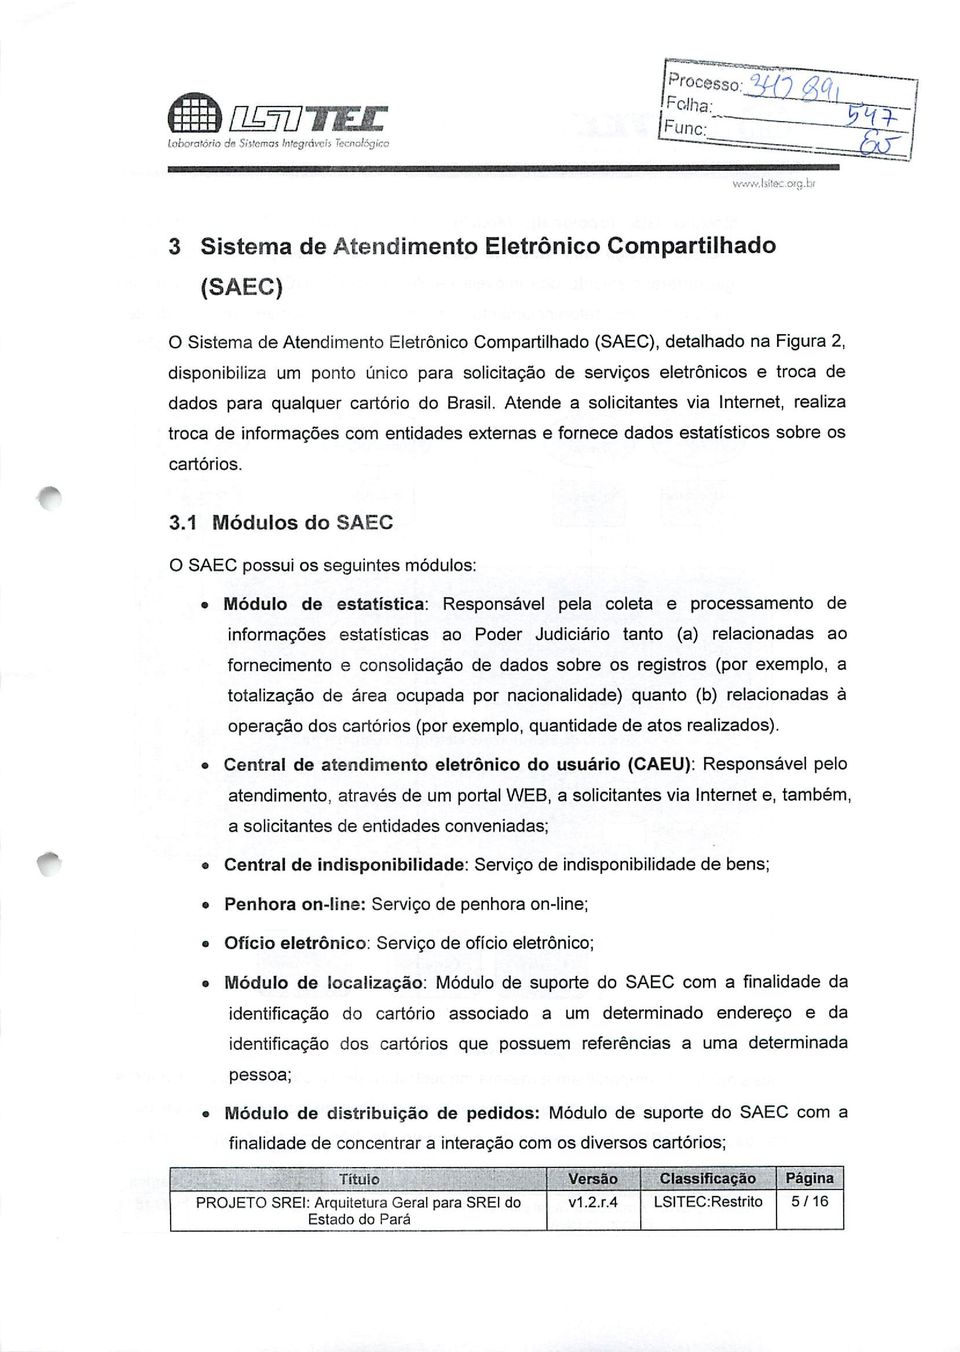 serviços eletrônicos e troca de dados para qualquer cartório do Brasil.